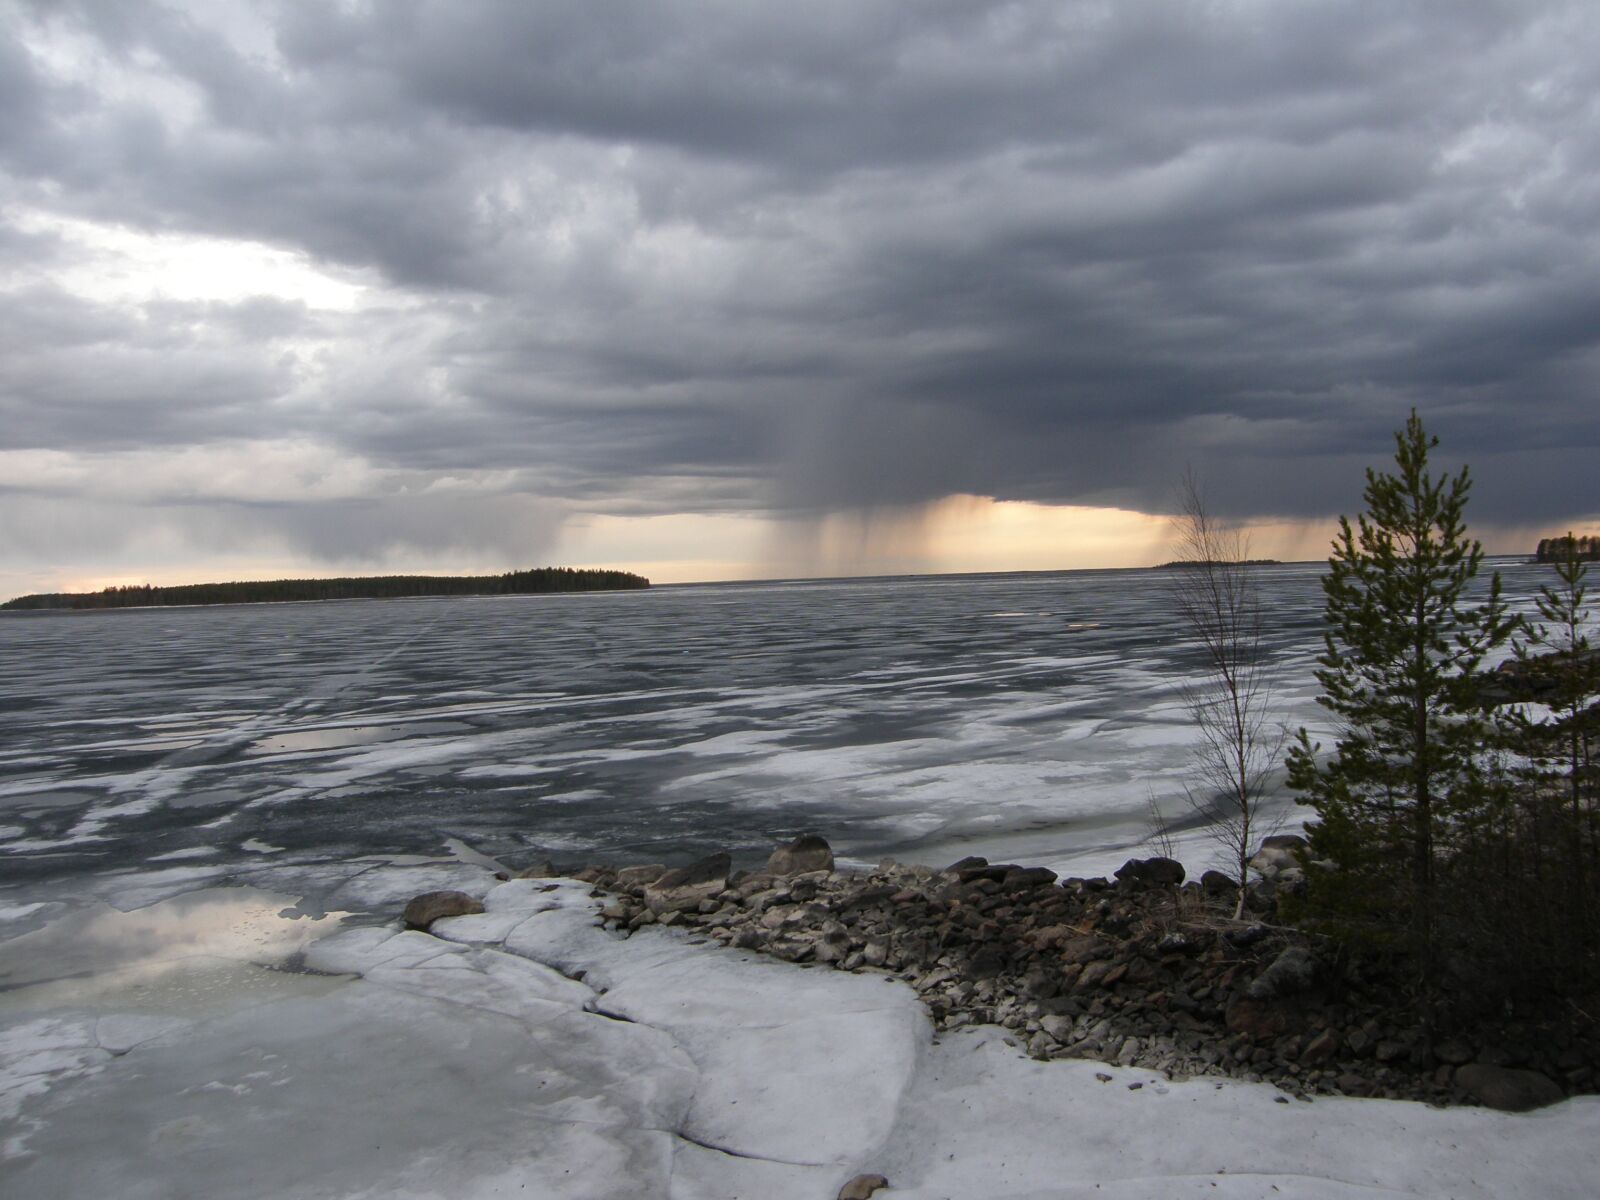 Olympus SP550UZ sample photo. Ice, thunderstorm, landscape photography